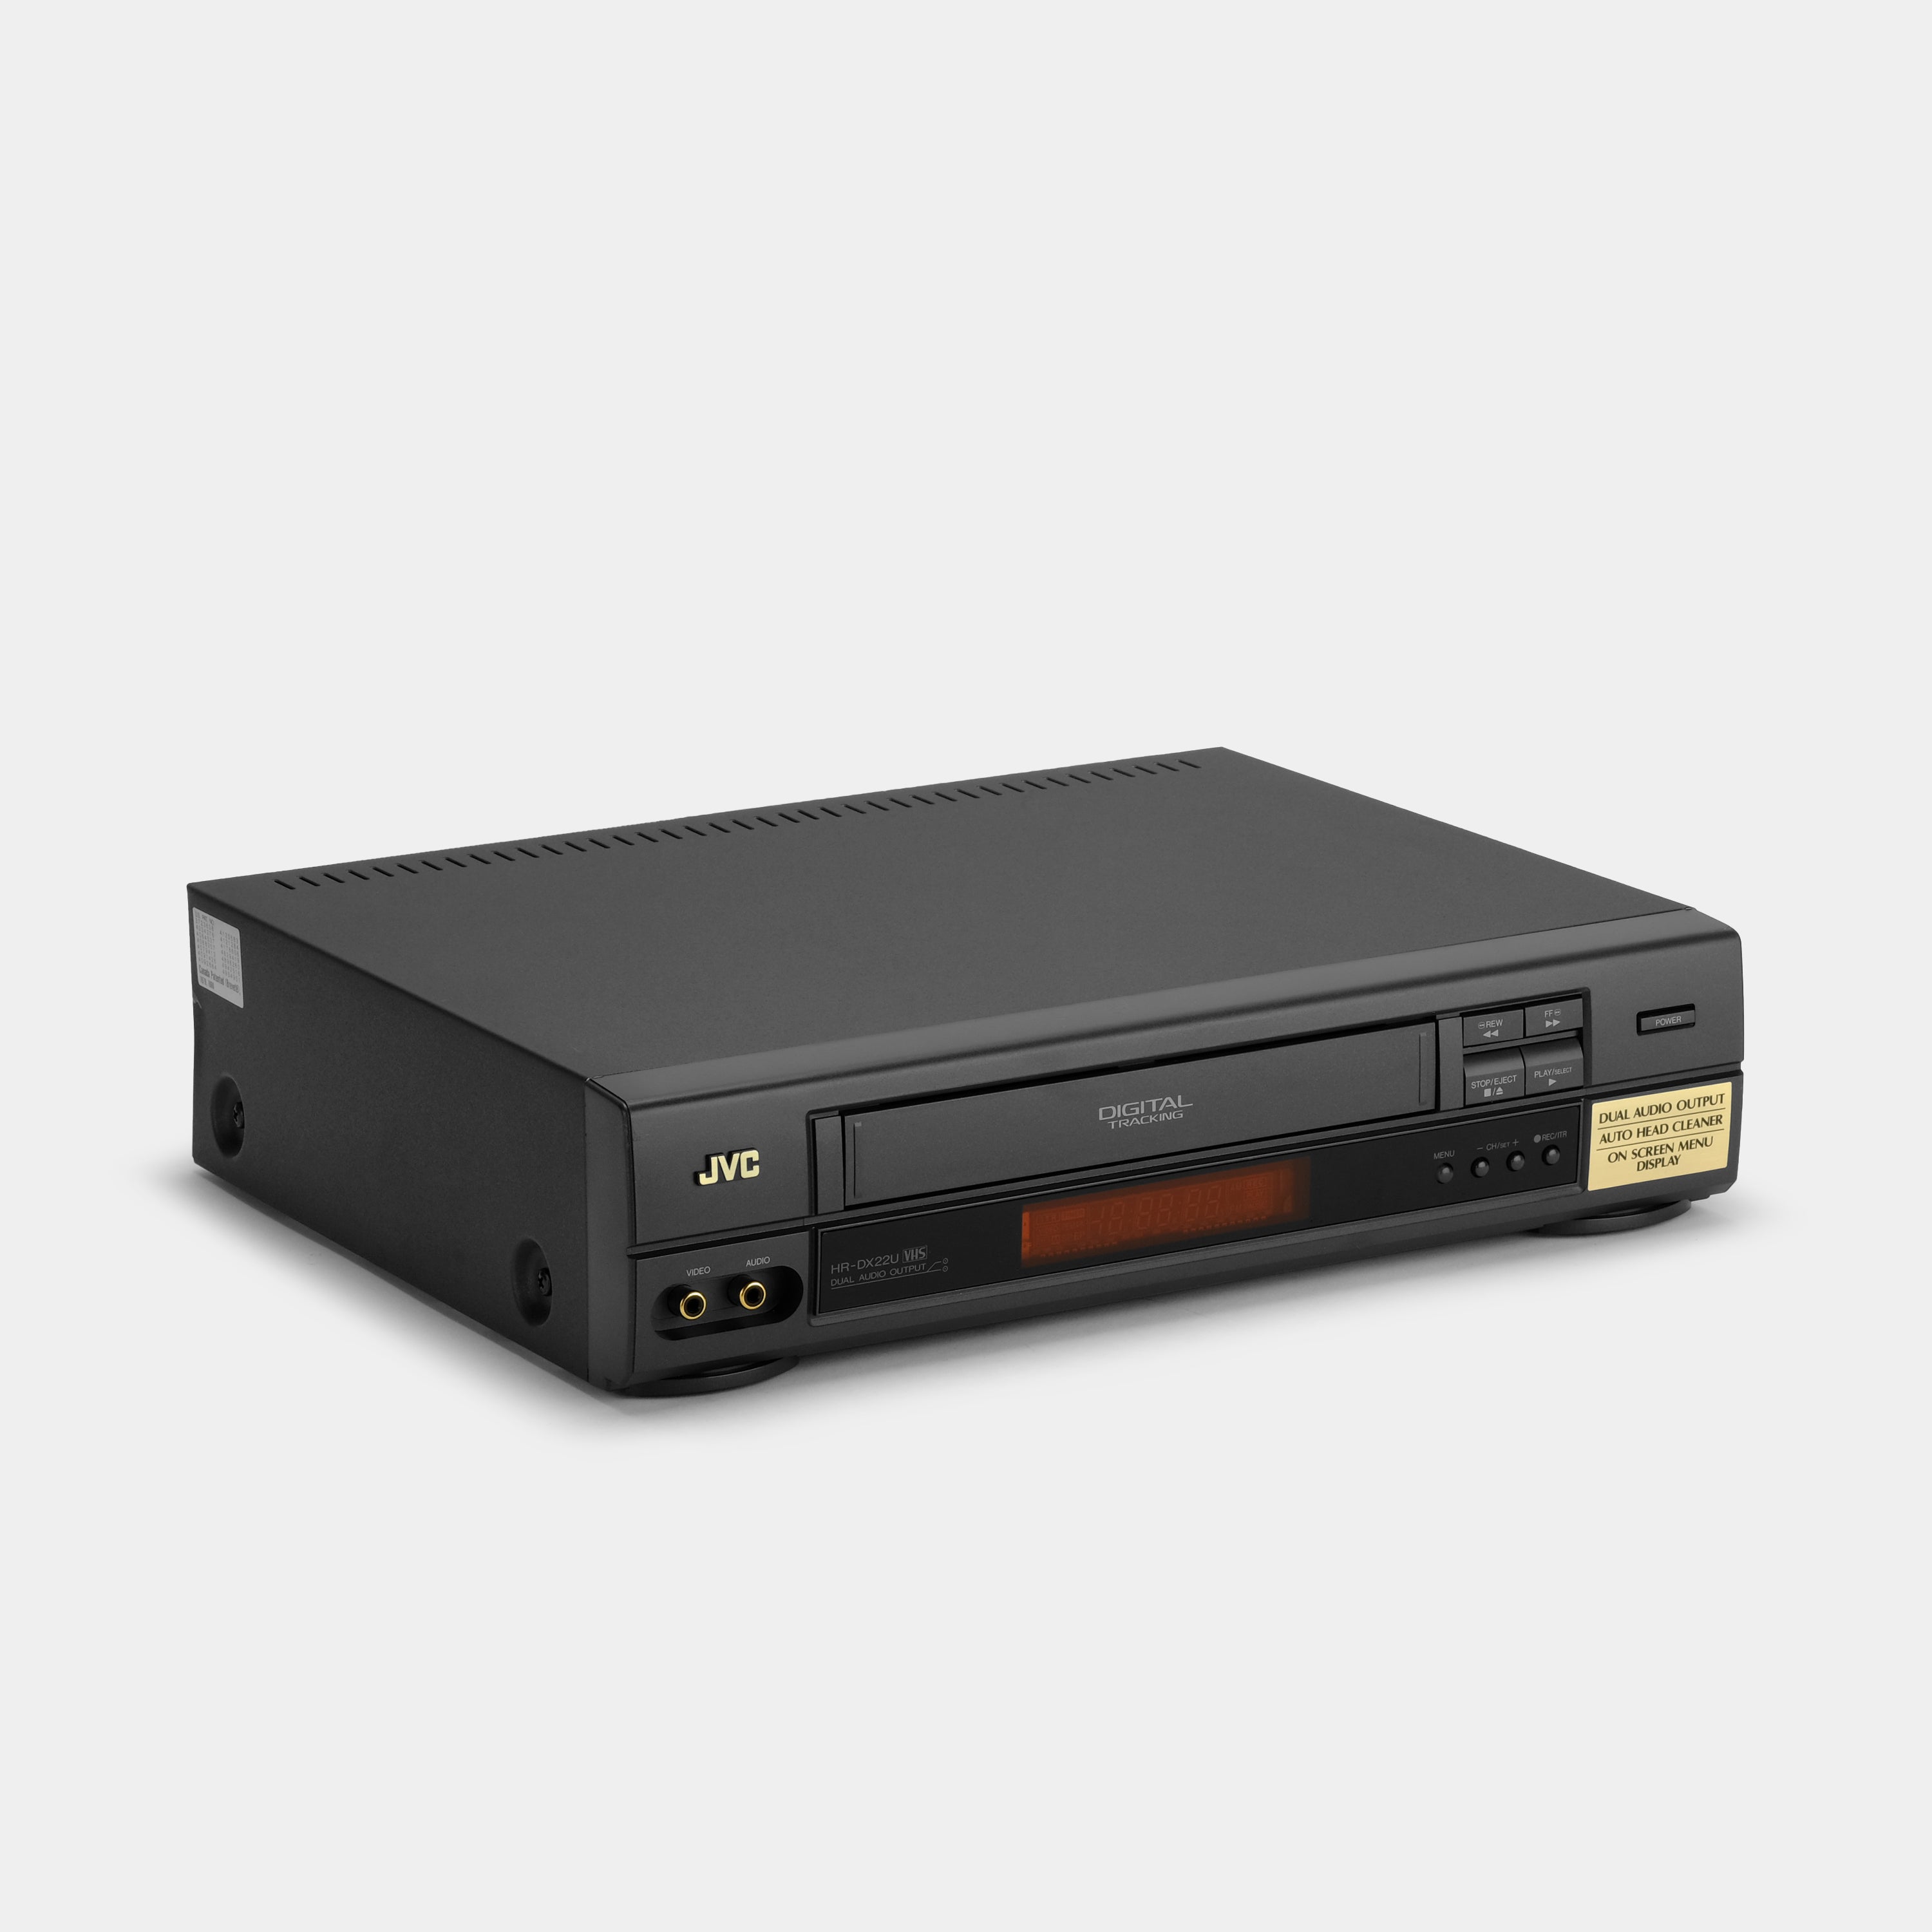 JVC HR-DX22U VCR VHS Player